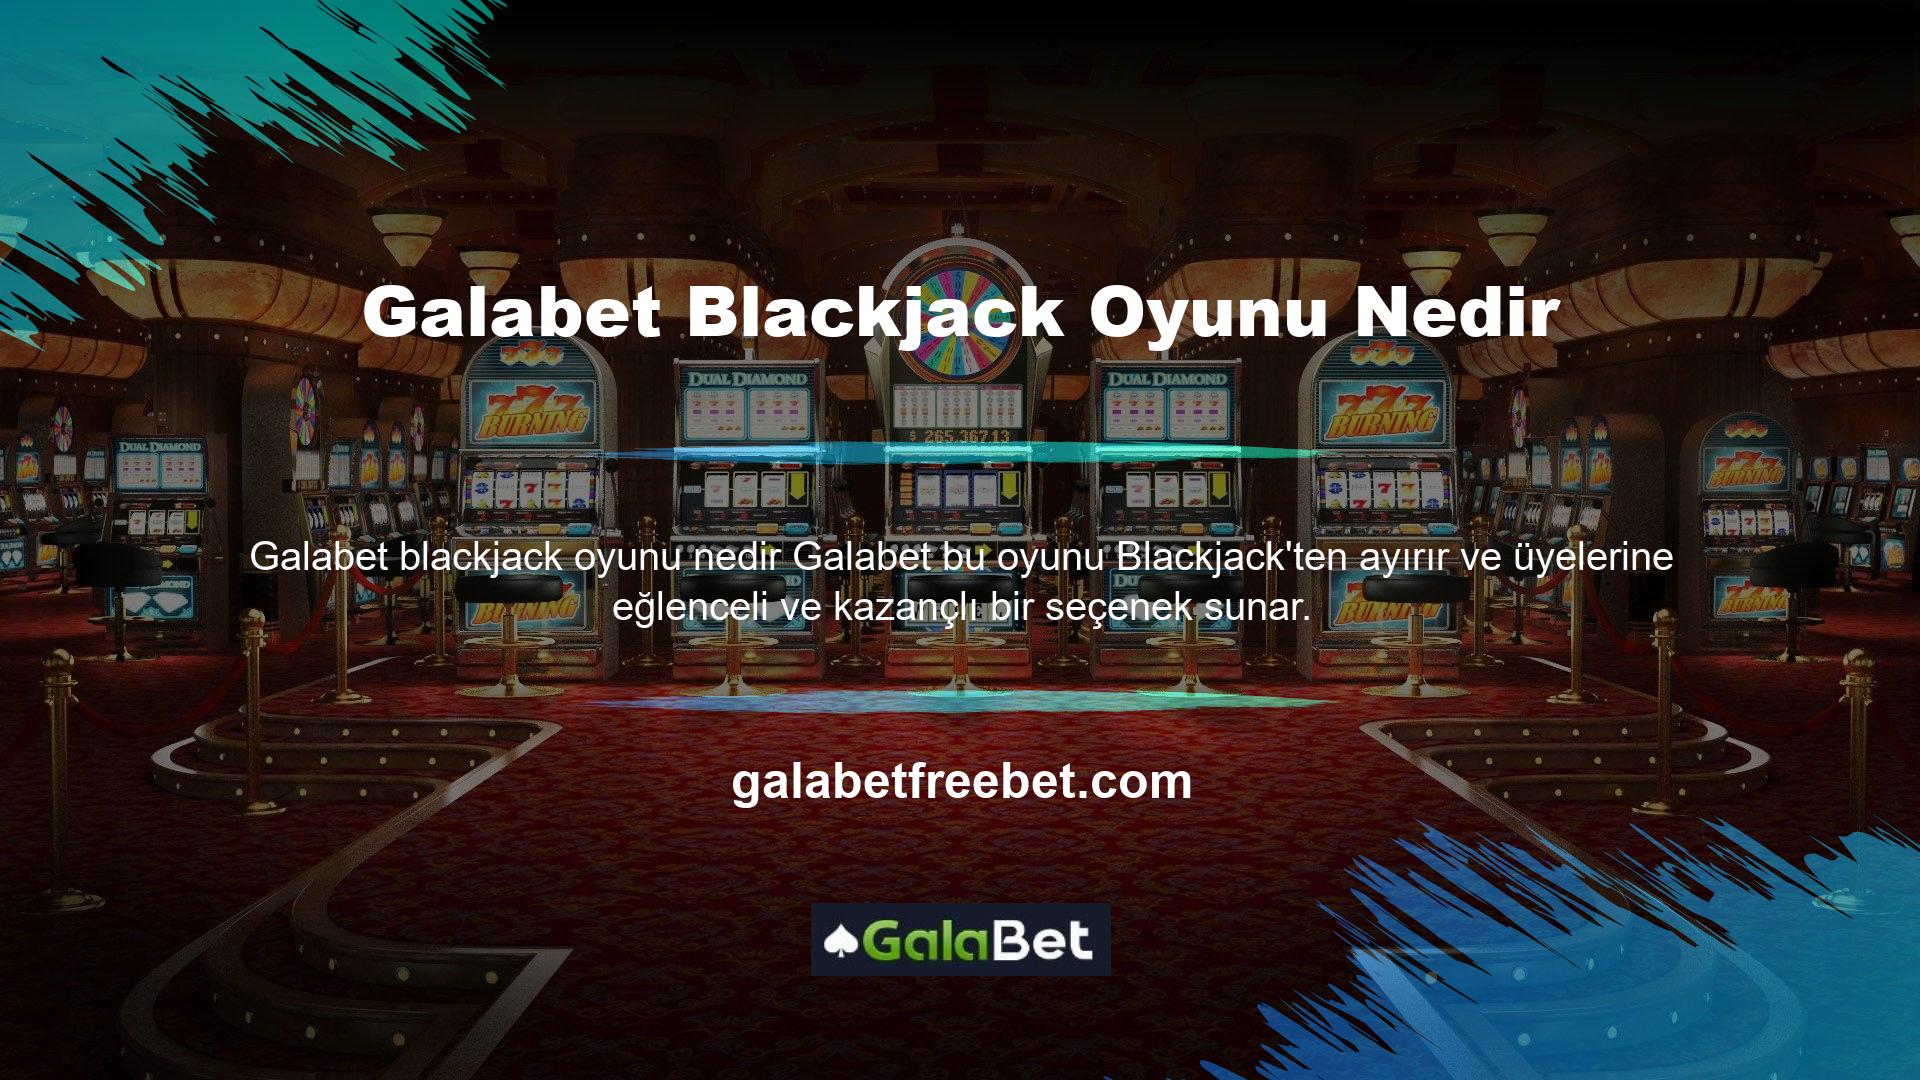 Blackjack, blackjack olarak bilinen dünyaca ünlü kart oyunlarından biridir